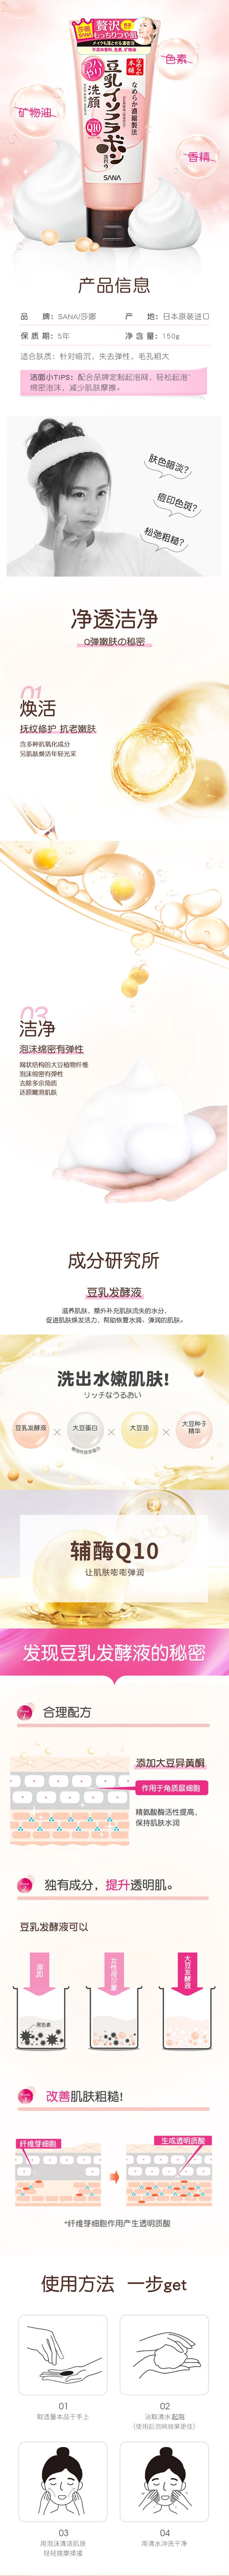 【日本直效郵件】SANA莎娜 豆乳美肌輔酶Q10洗面乳 150g